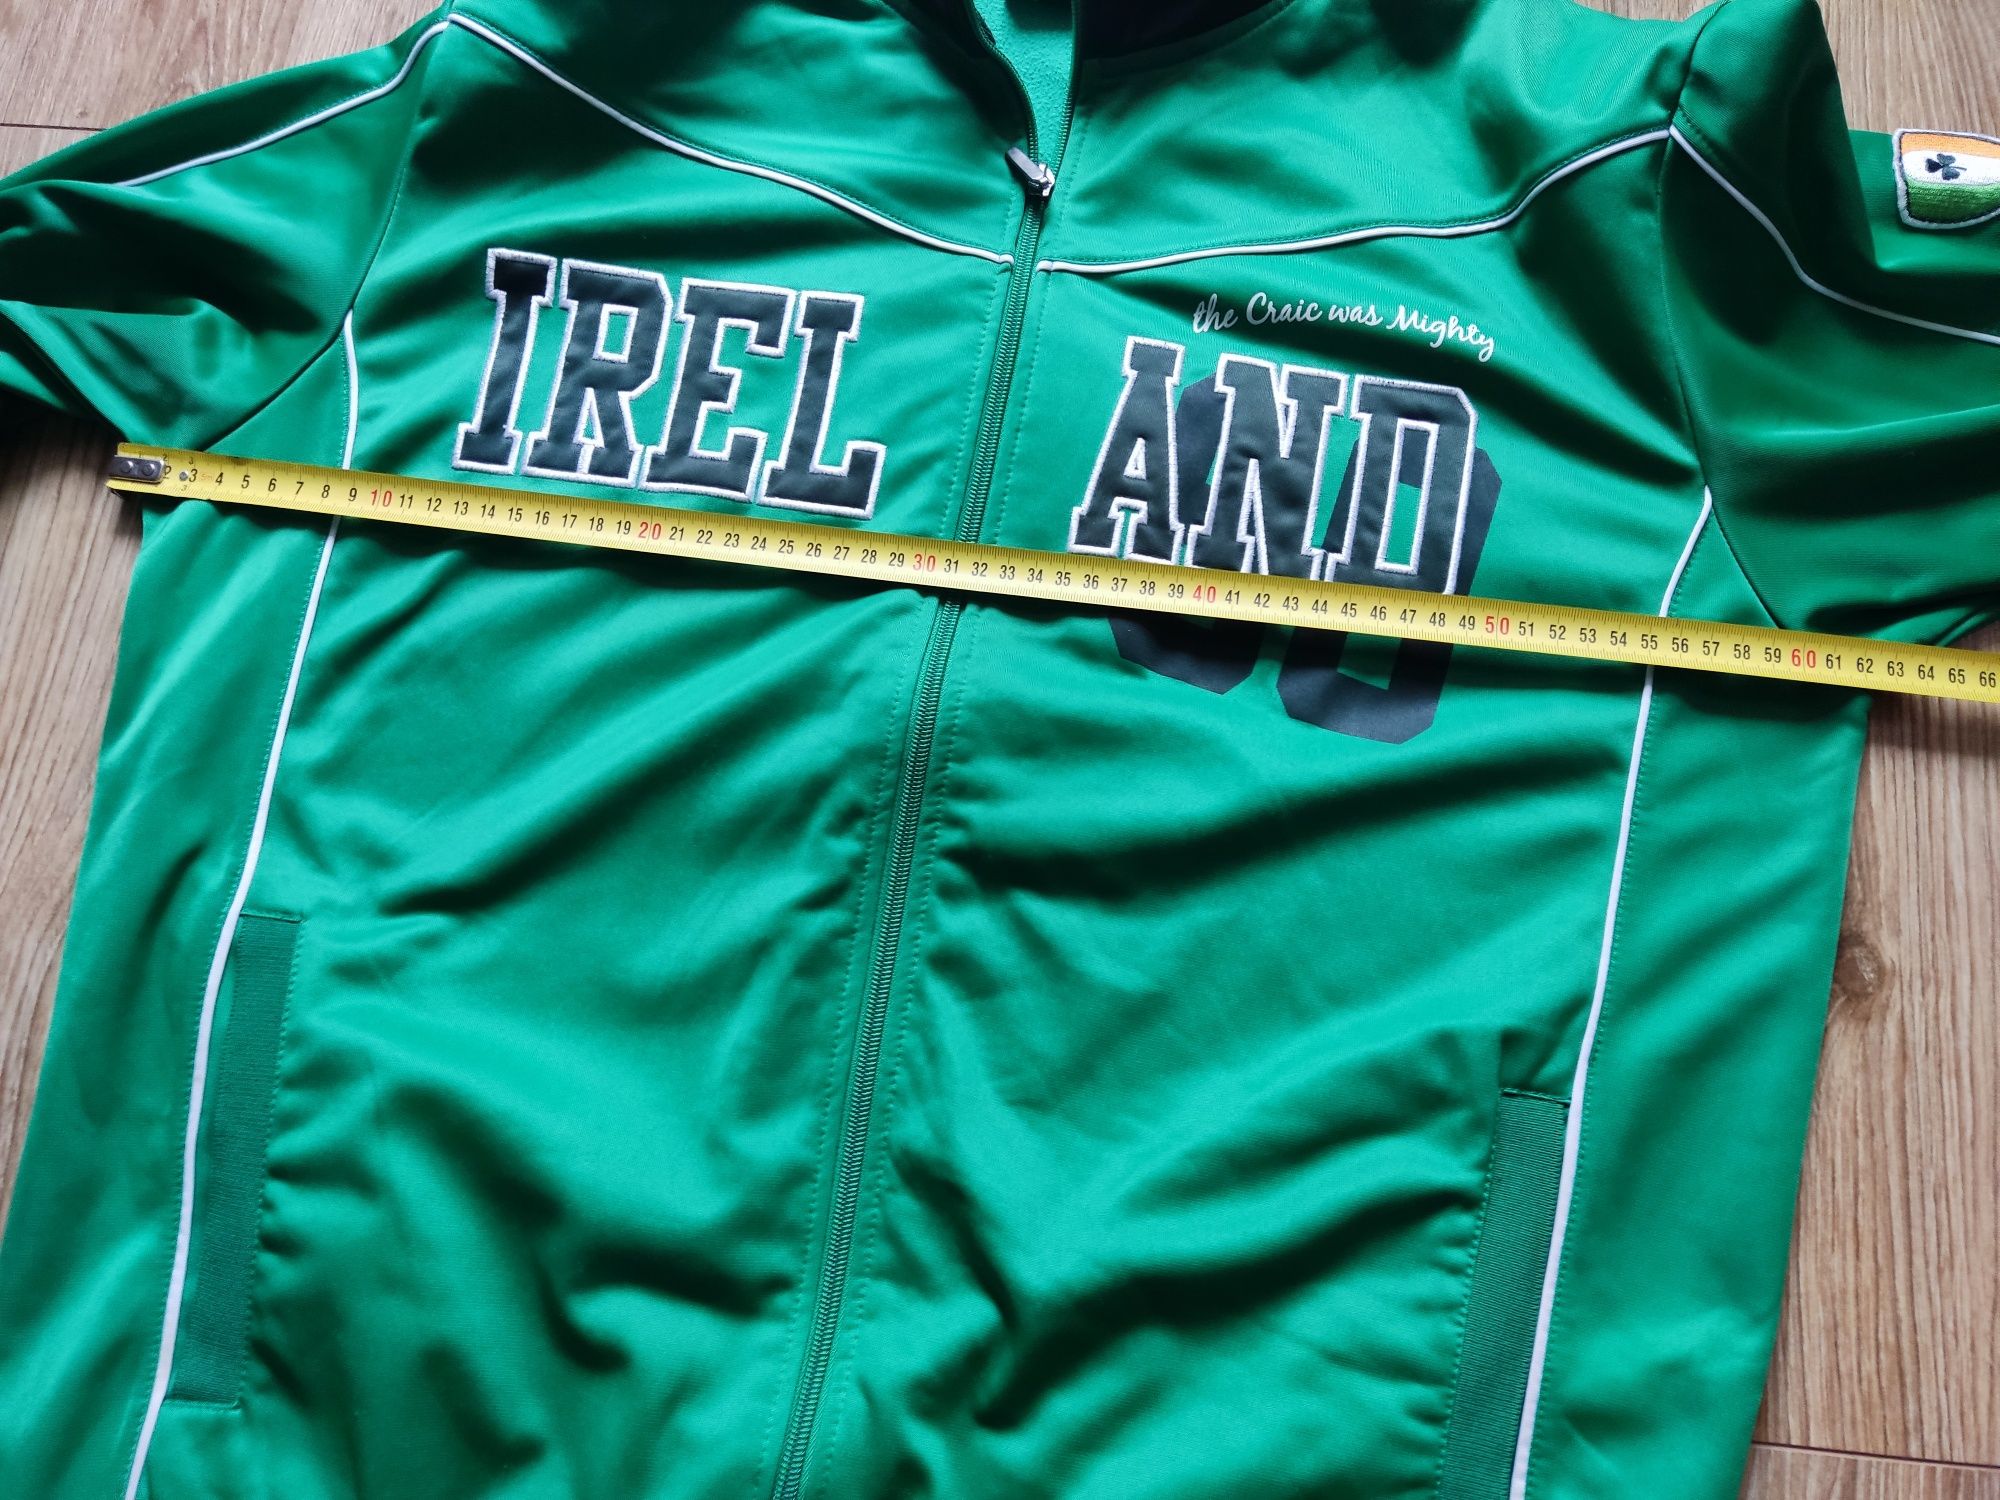 Super bluza Ireland Irish retro. Basebolowka,  super materiał, r. XL